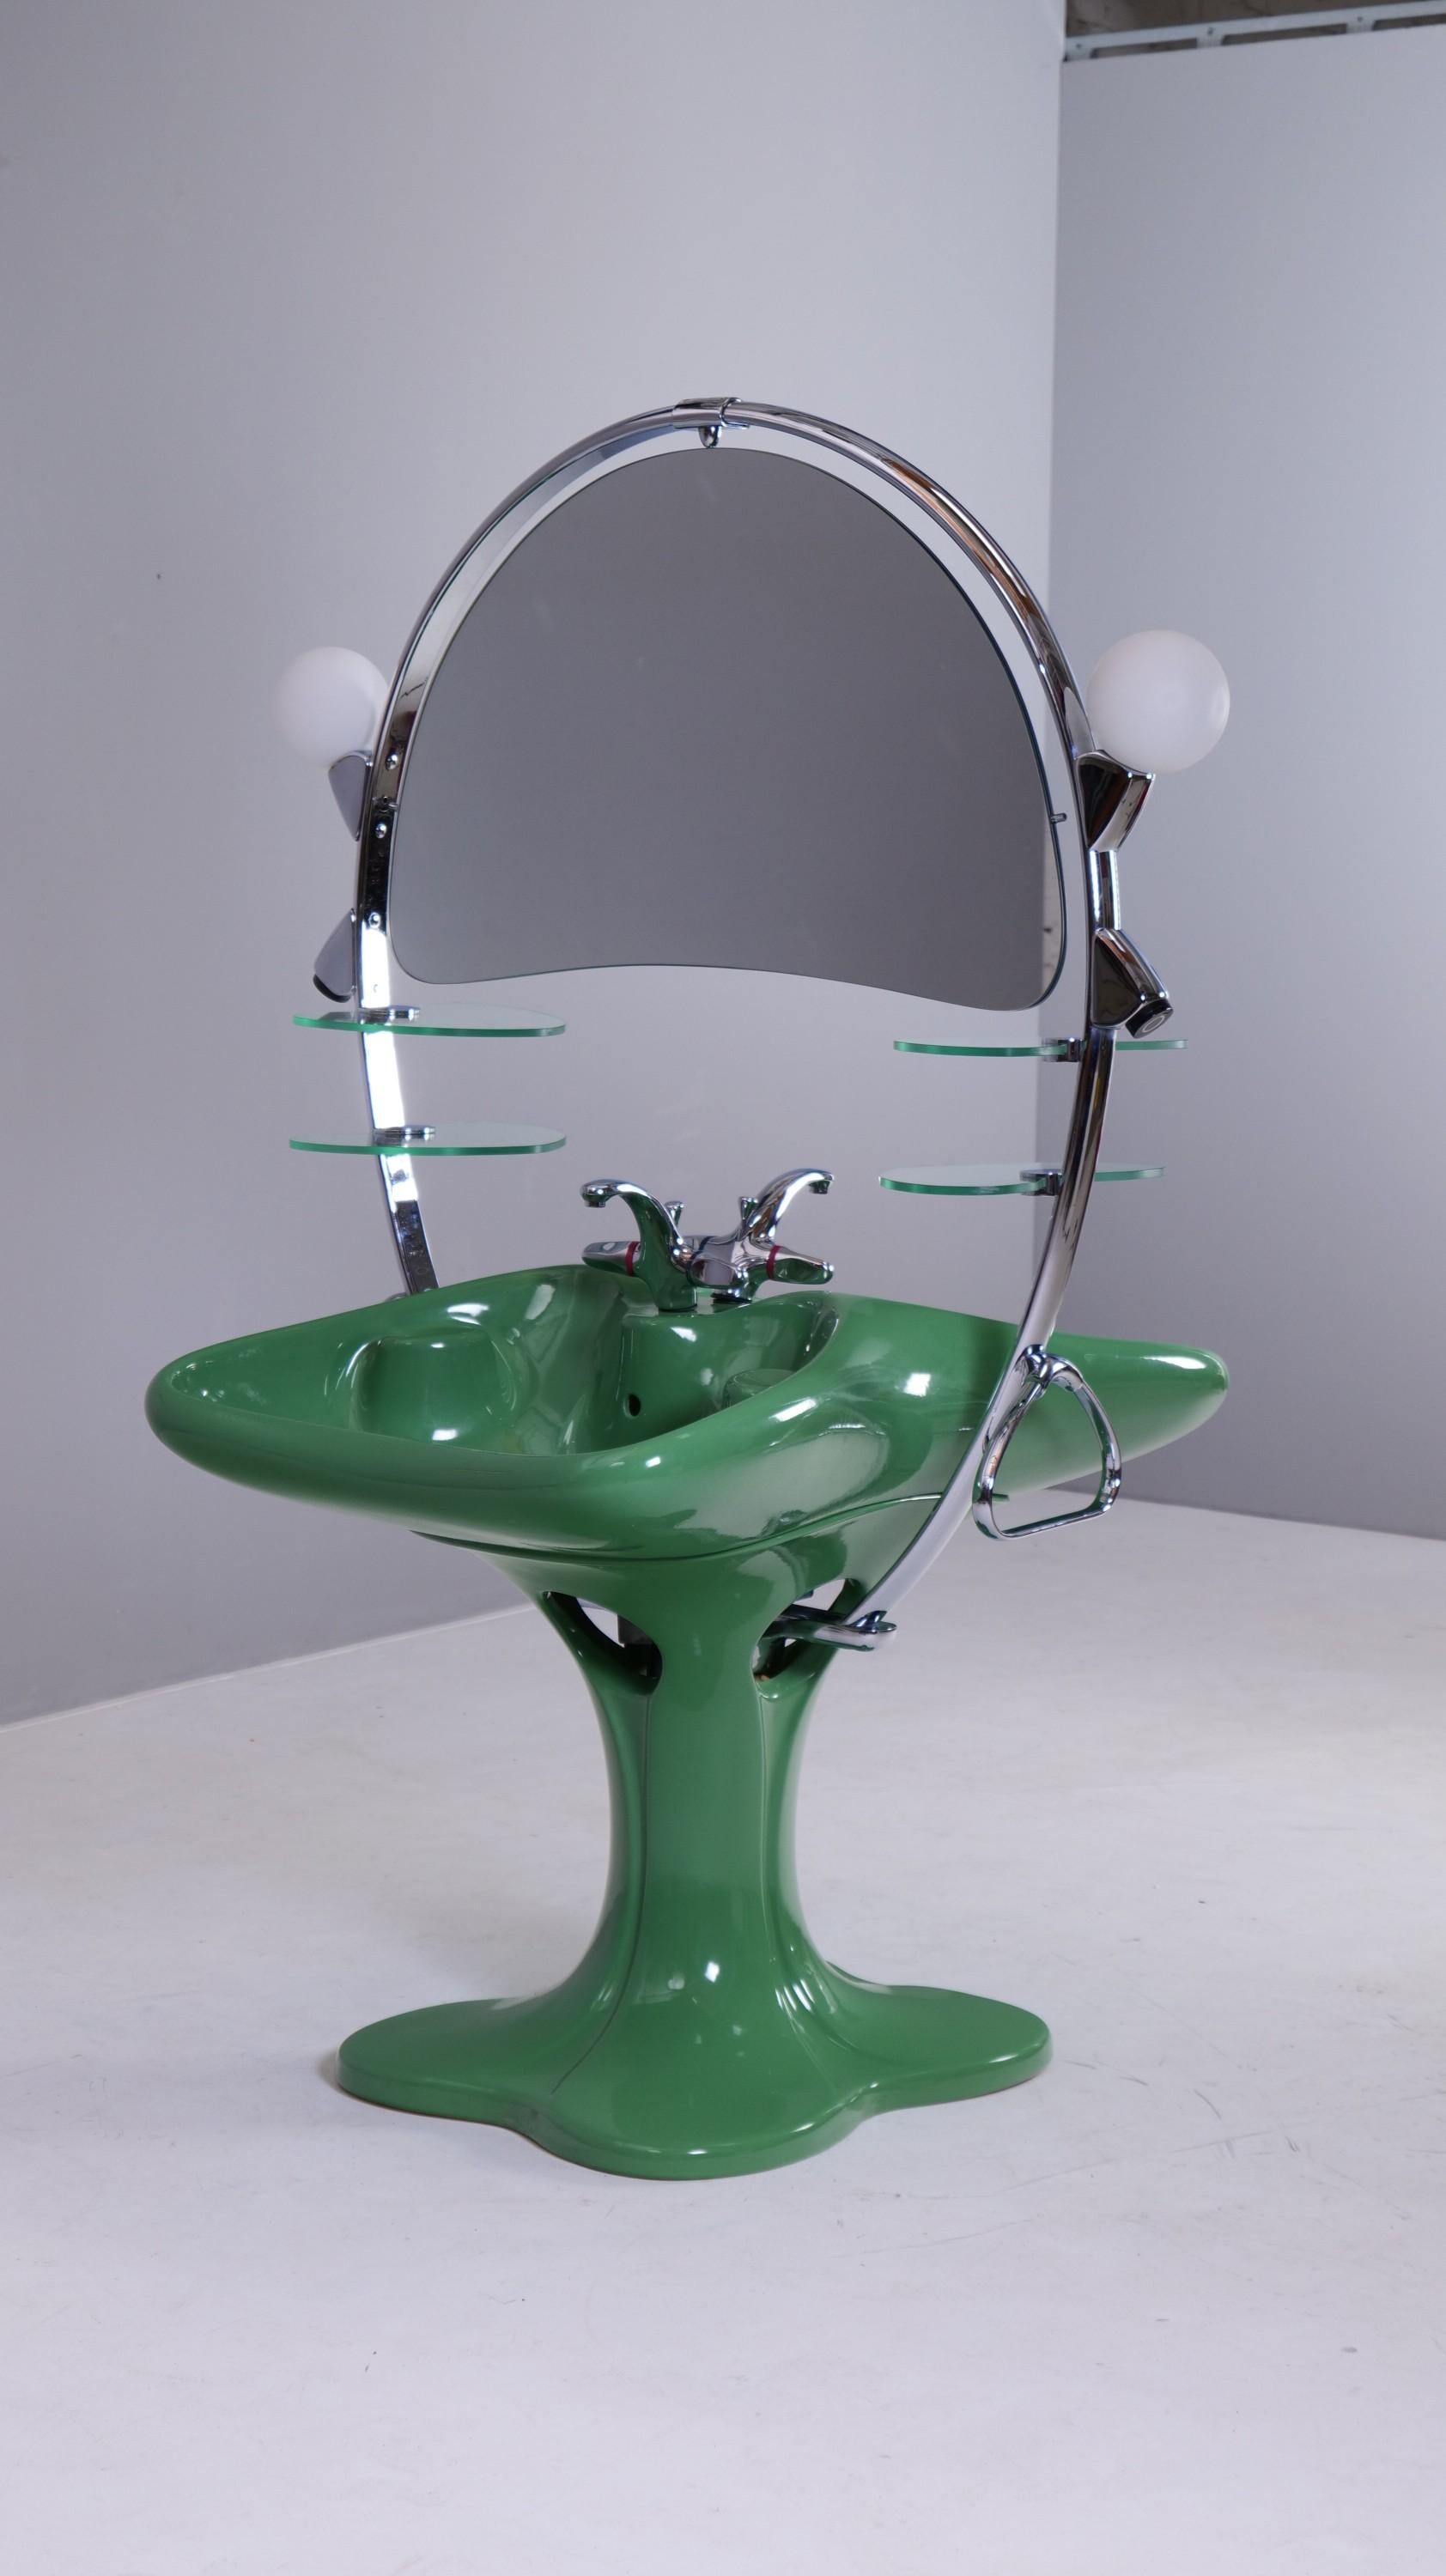 Seltenes Doppelwaschbecken von Luigi Colani aus den 1970er Jahren.

Das Waschbecken wird in der Mitte des Raumes installiert.

Getrennt werden die beiden Becken durch einen weit gespannten Bogen aus verchromtem Metall, in dessen Mitte sich auf